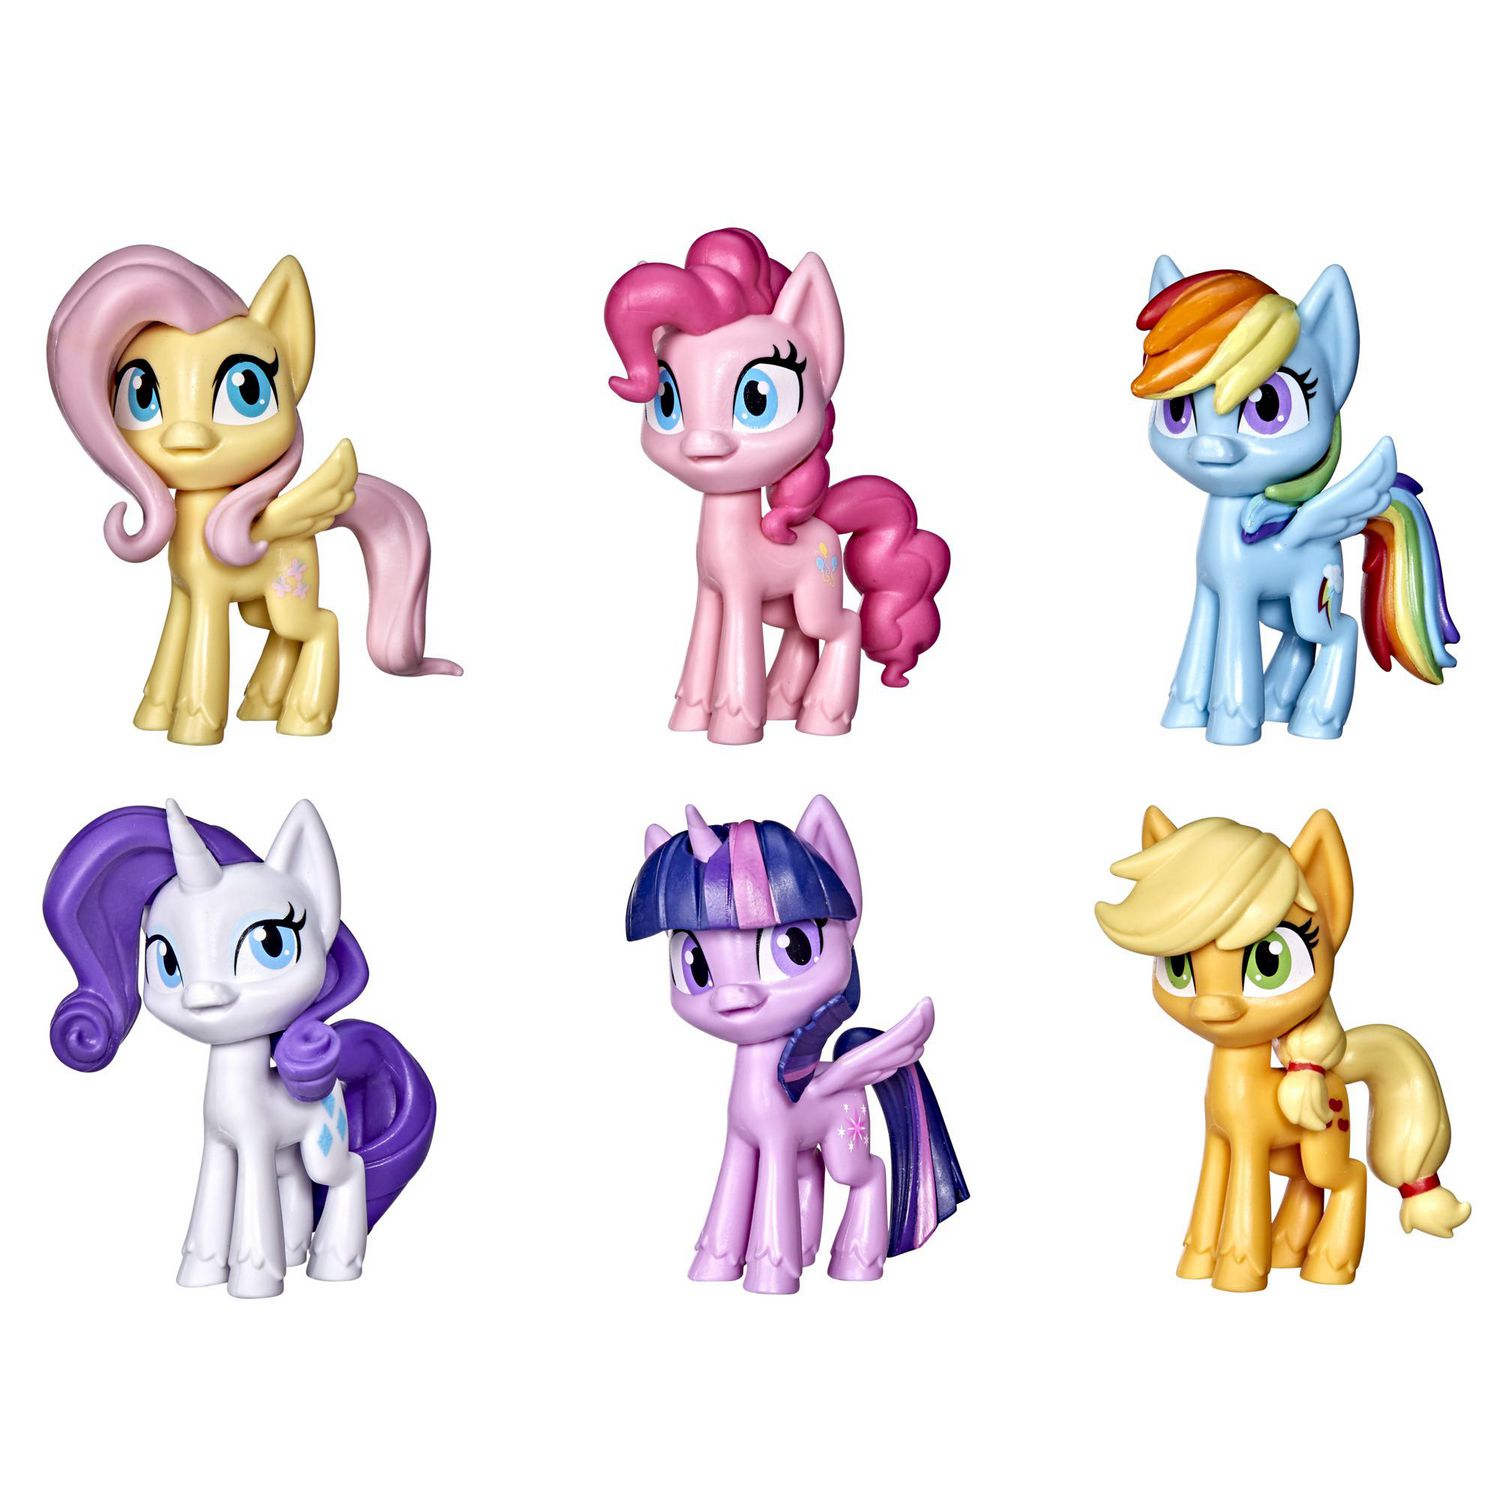 マイリトルポニー My Little Pony Friendship is Magic Inch Single